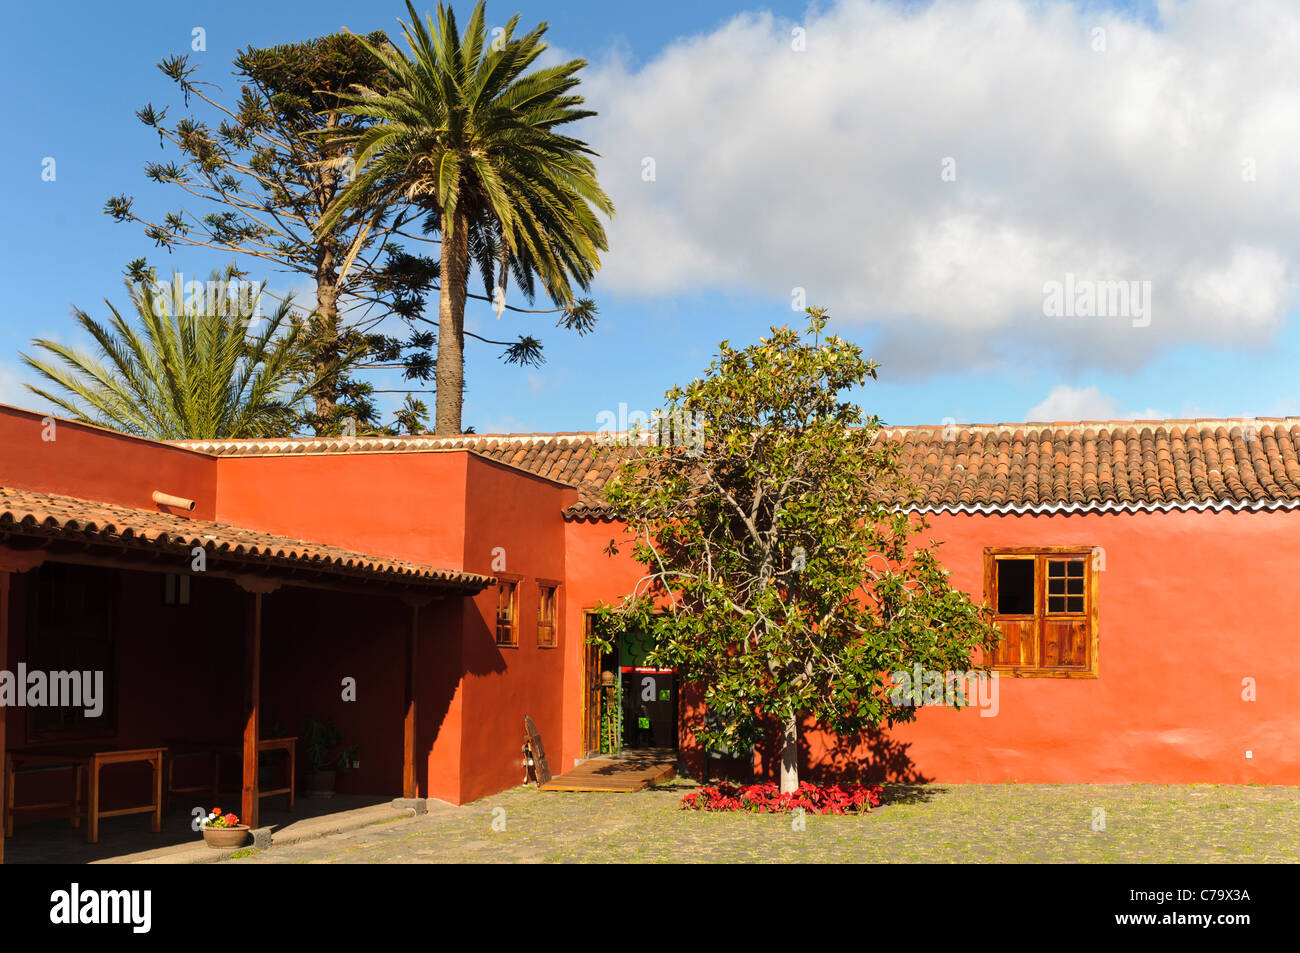 Casa del Vino La Baranda, Wine Museum, former farmhouse in a traditional Canarian architecture, El Sauzal, Tenerife, Spain Stock Photo